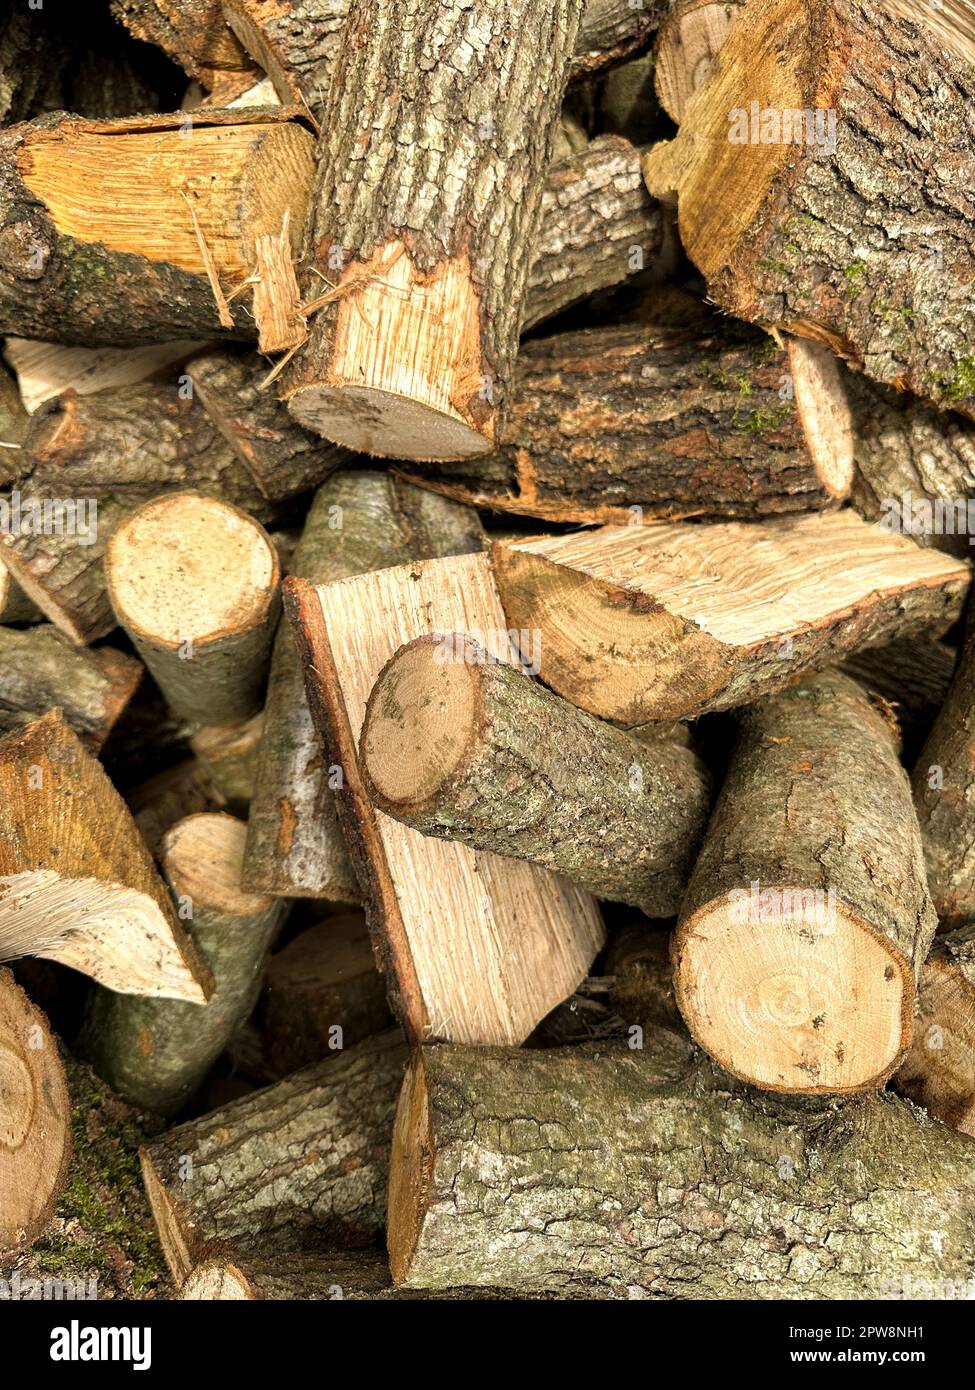 Geschnittene Holzstücke. Ein großer Haufen Brennholz. Bäume wurden geschnitten und in Brennholz geteilt, das als Brennstoff für Heizzwecke in Kamin und Öfen in verwendet werden soll Stockfoto